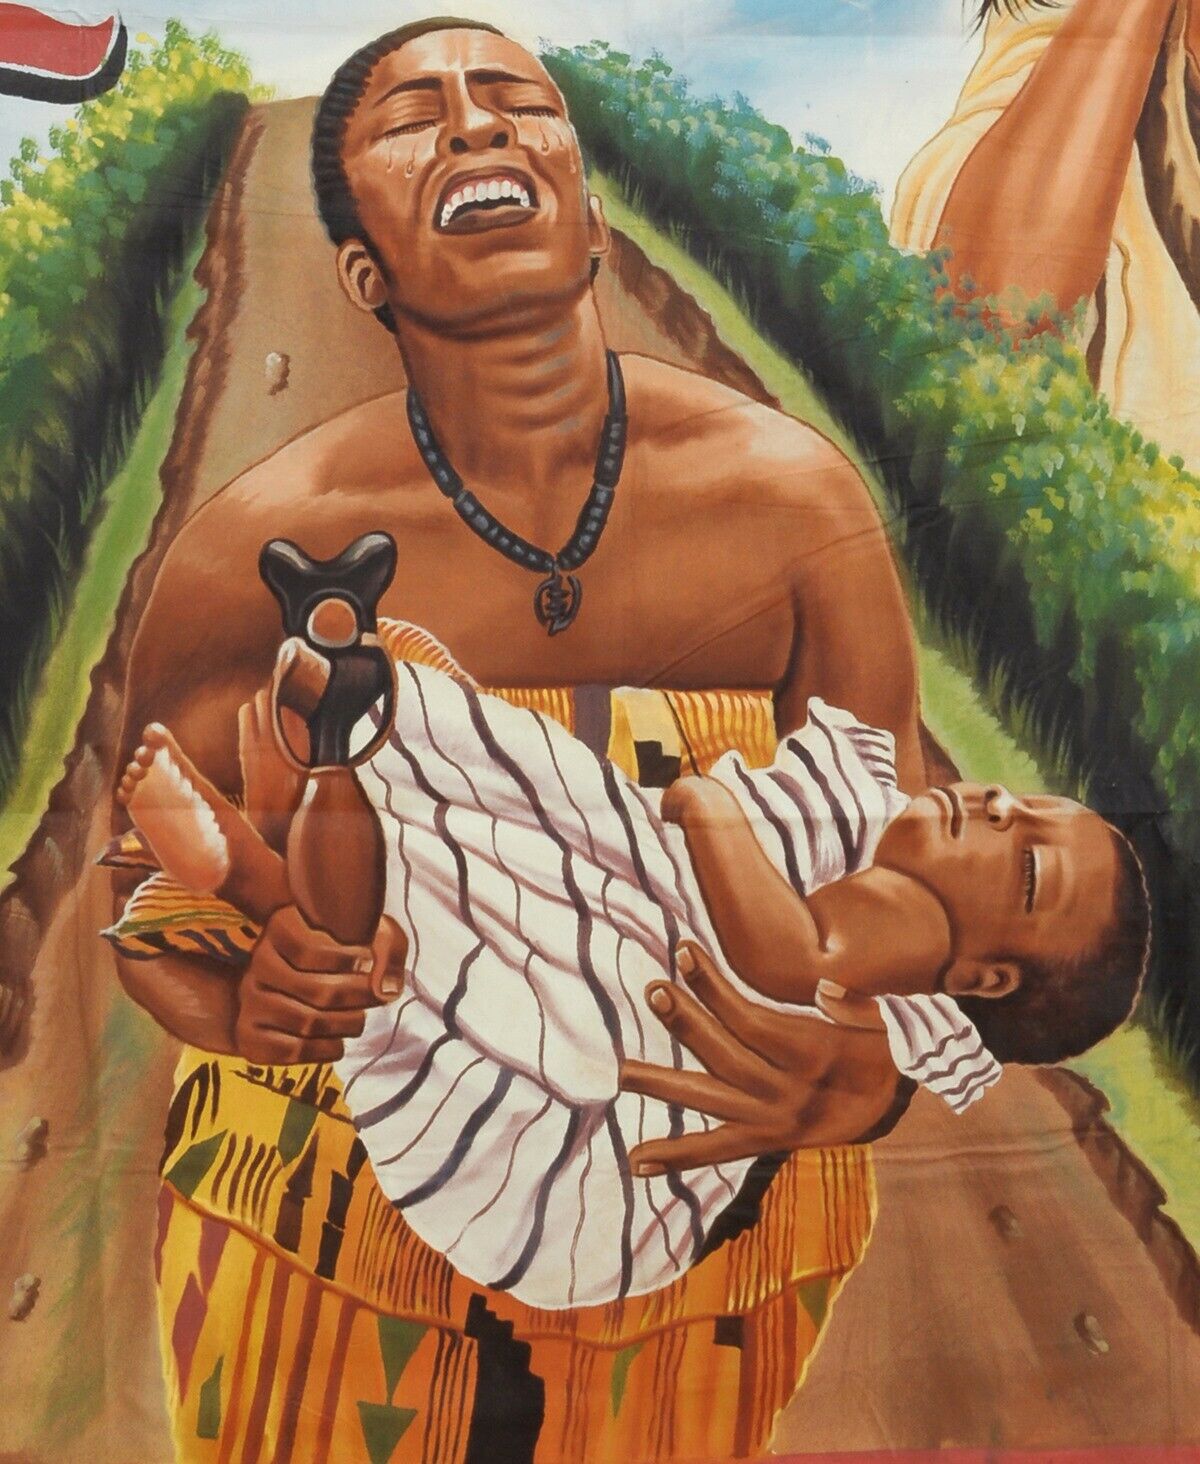 Αφίσα ταινίας της Γκάνας Αφρικανική ελαιογραφία κινηματογράφου λαϊκής τέχνης ζωγραφισμένη στο χέρι Riches 2 - Tribalgh